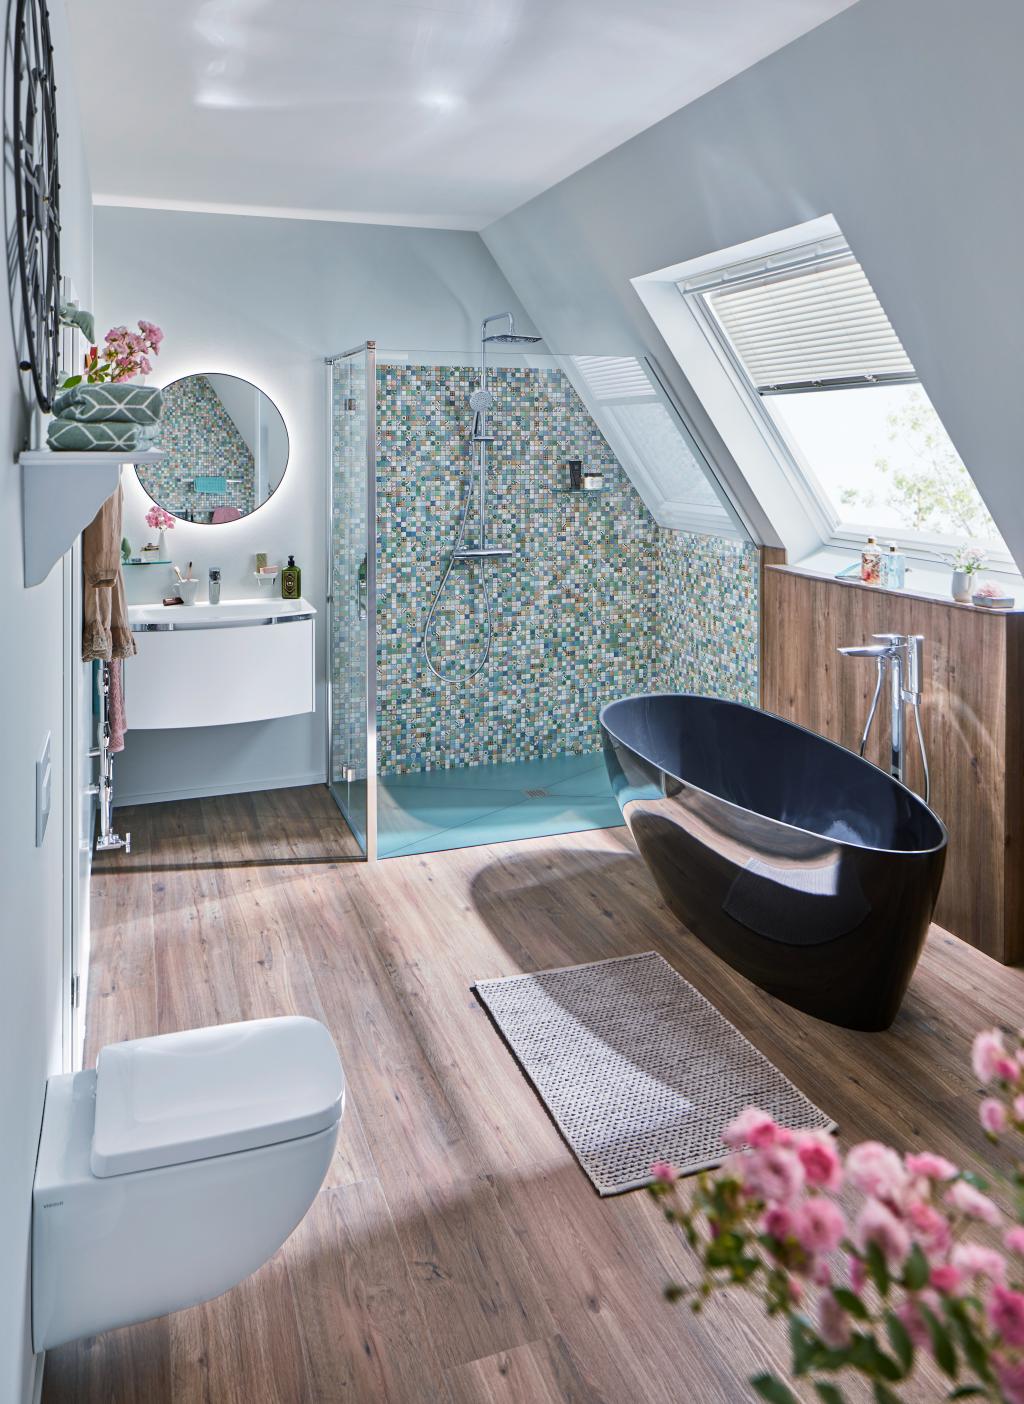 Badezimmer im Dachgeschoss in nostalgischem Flar mit Badewanne, Dusche, Fliesenspiegel und Holzboden